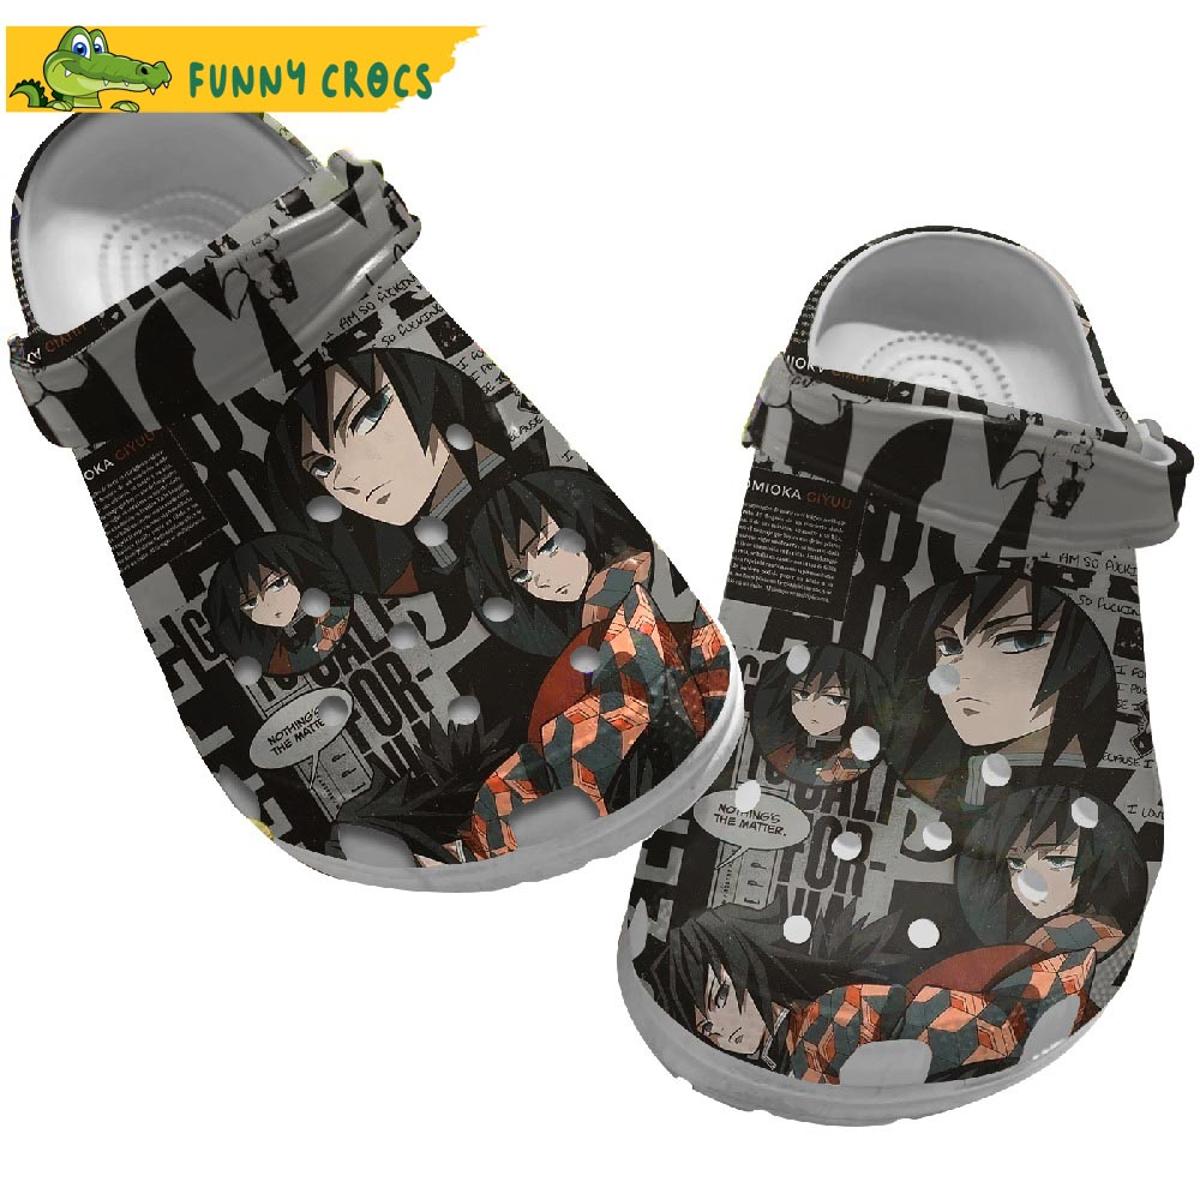 Demon Slayer Characters Anime Crocs Clog Shoes